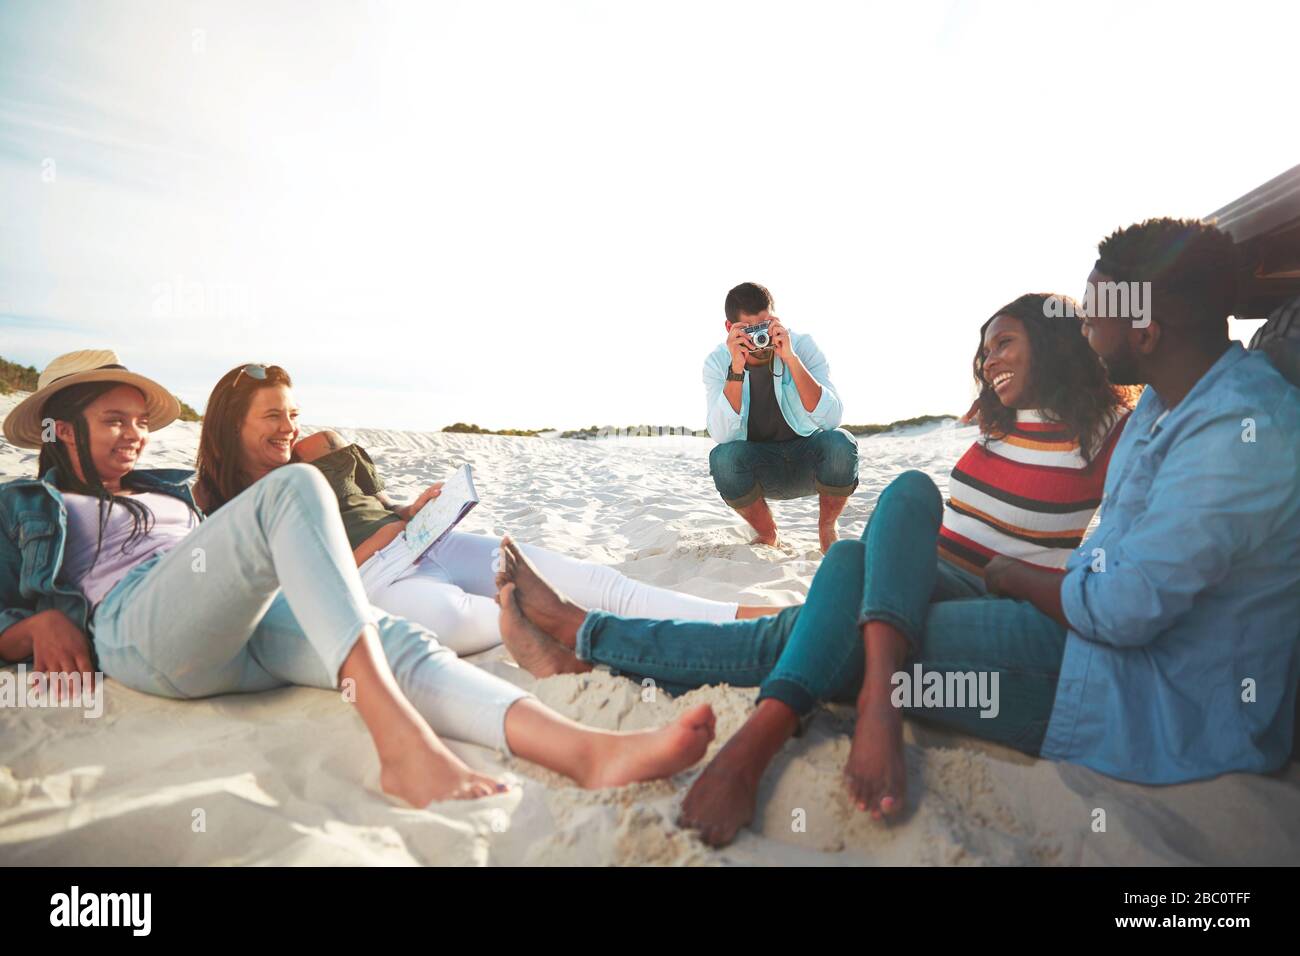 Jeune homme avec appareil photo numérique photographier des amis se détendre sur la plage Banque D'Images